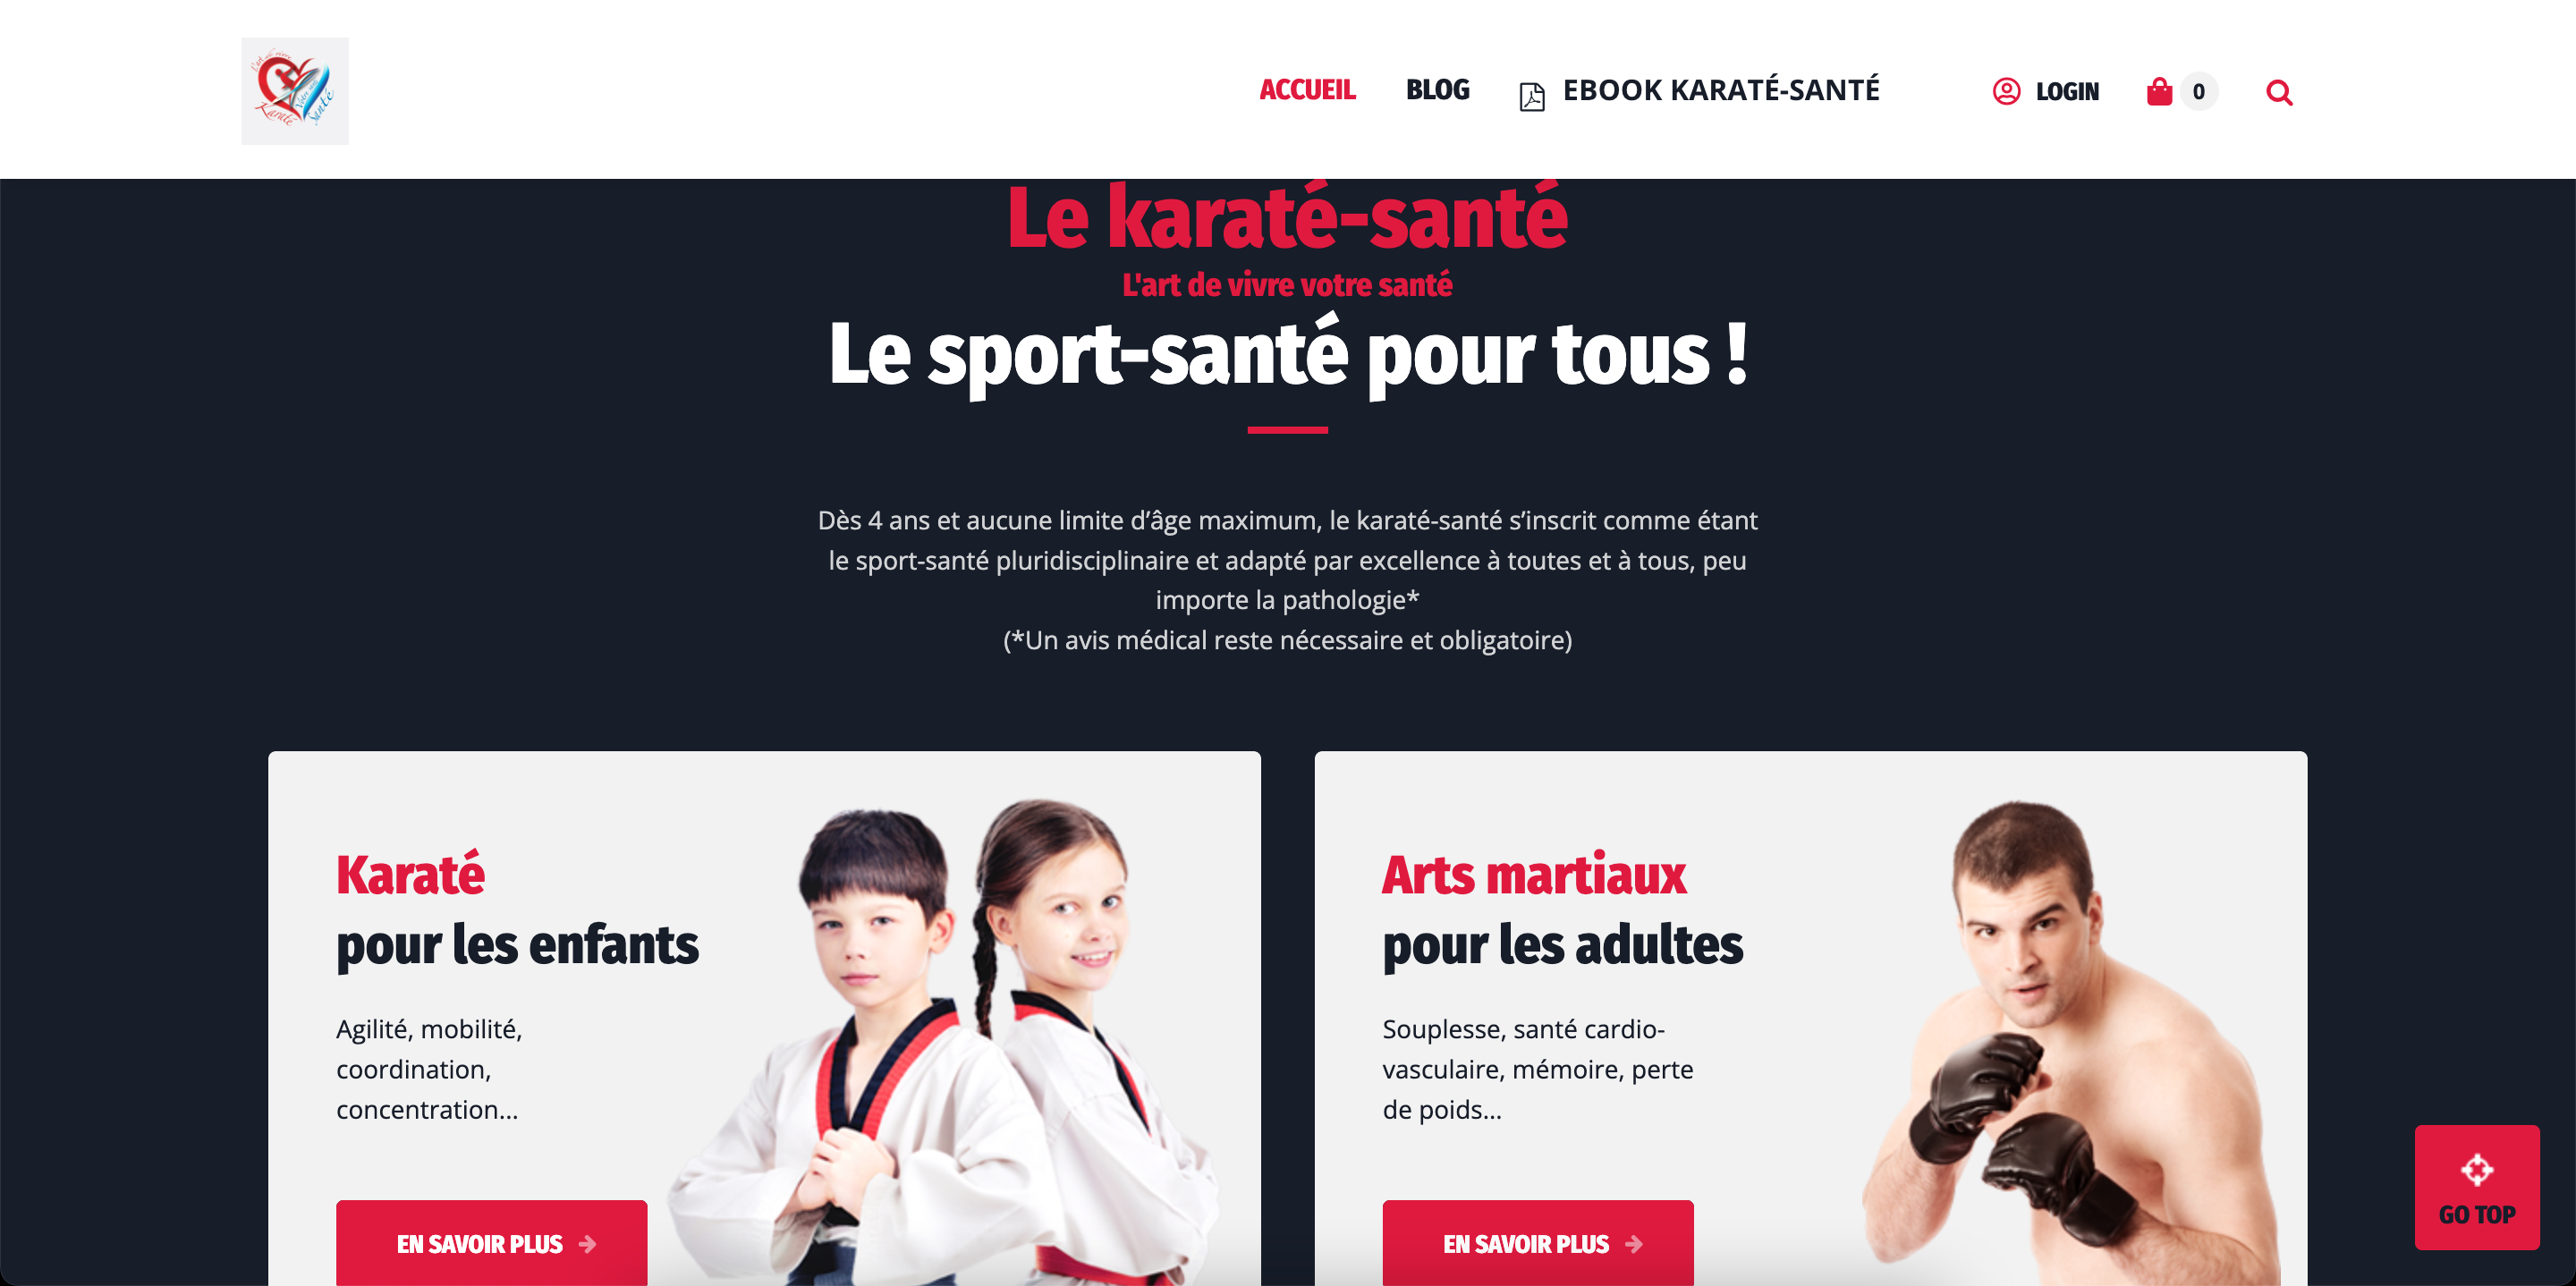 karate-sante.fr, l’art de vivre votre santé